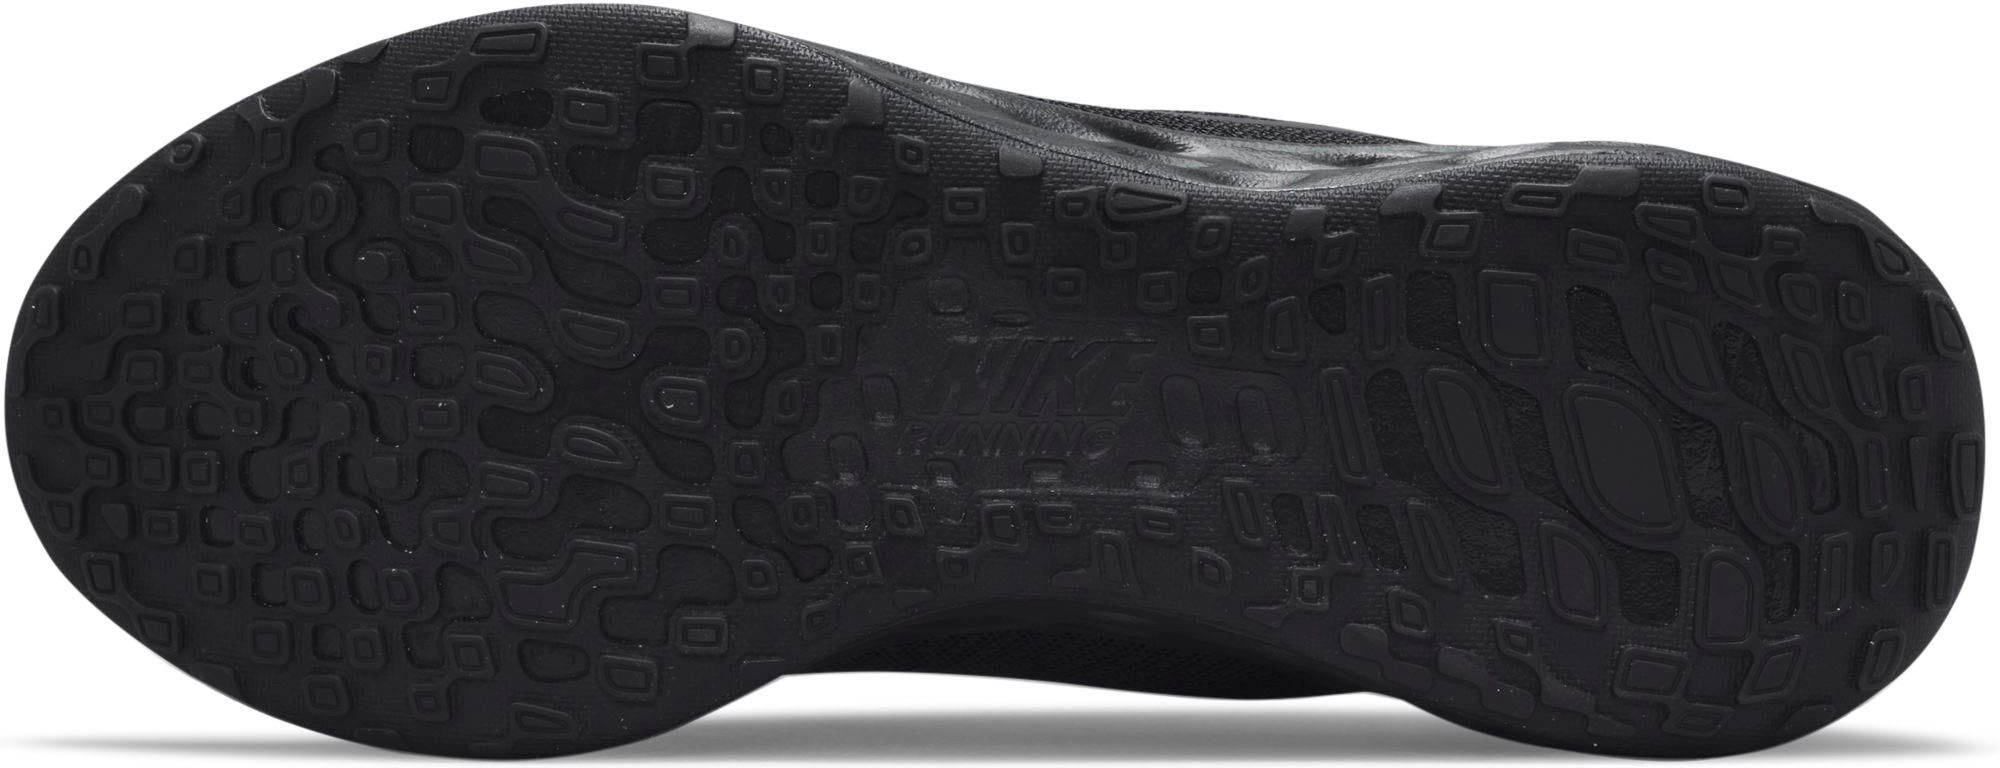 schwarz 6 NEXT Laufschuh REVOLUTION NATURE Nike